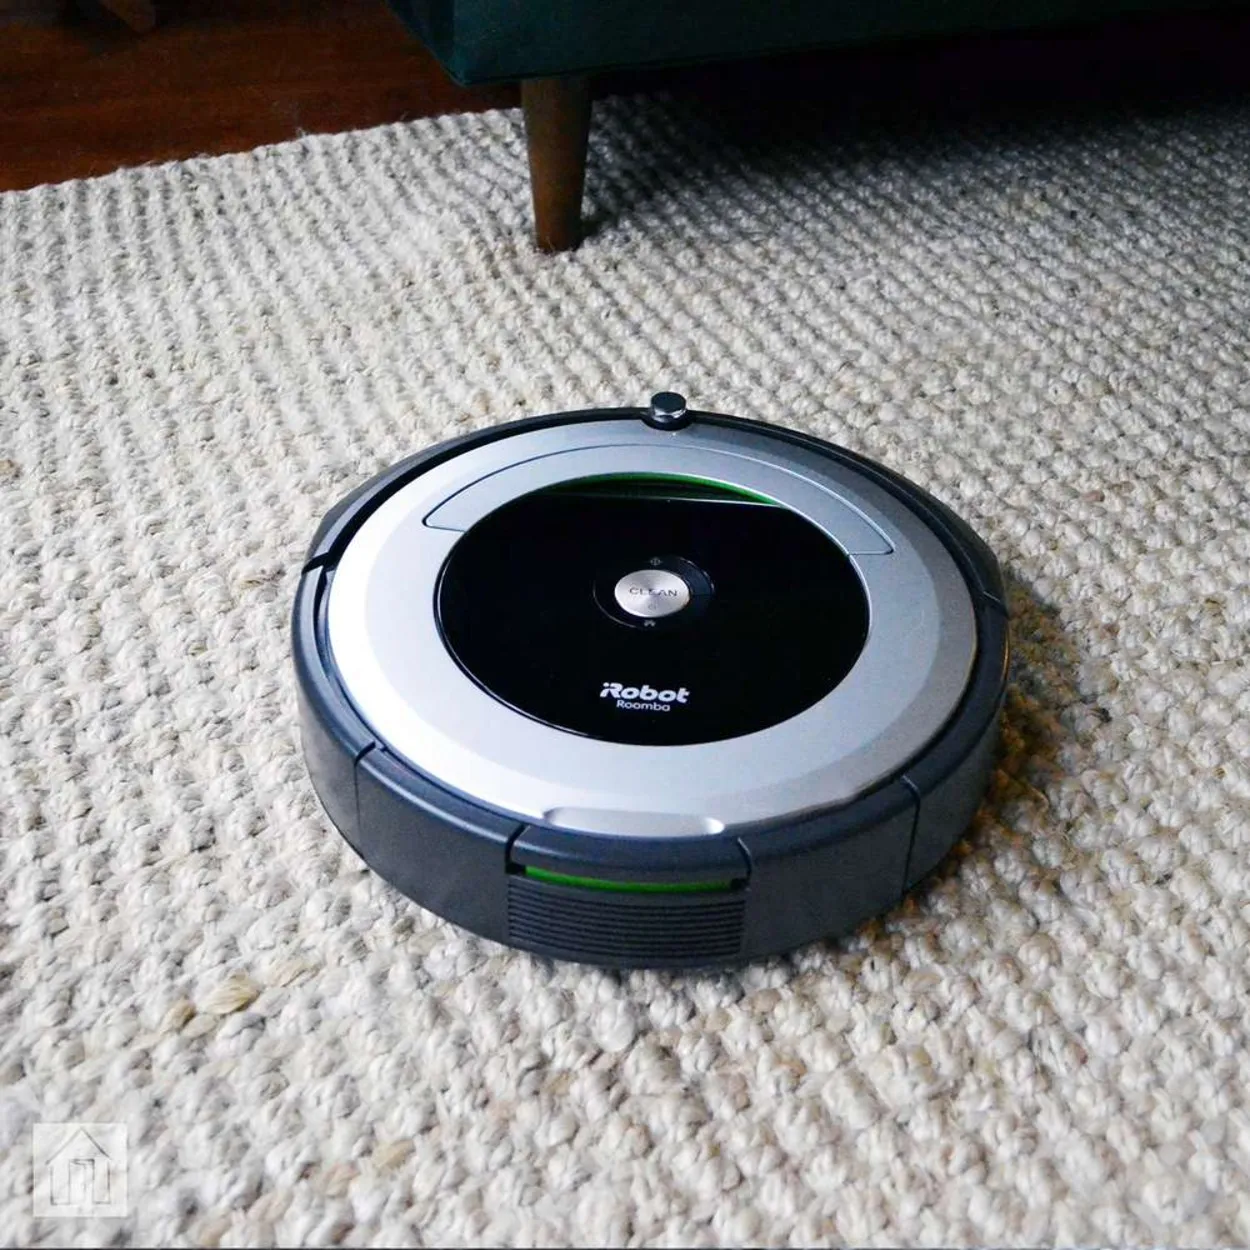 Roomba device